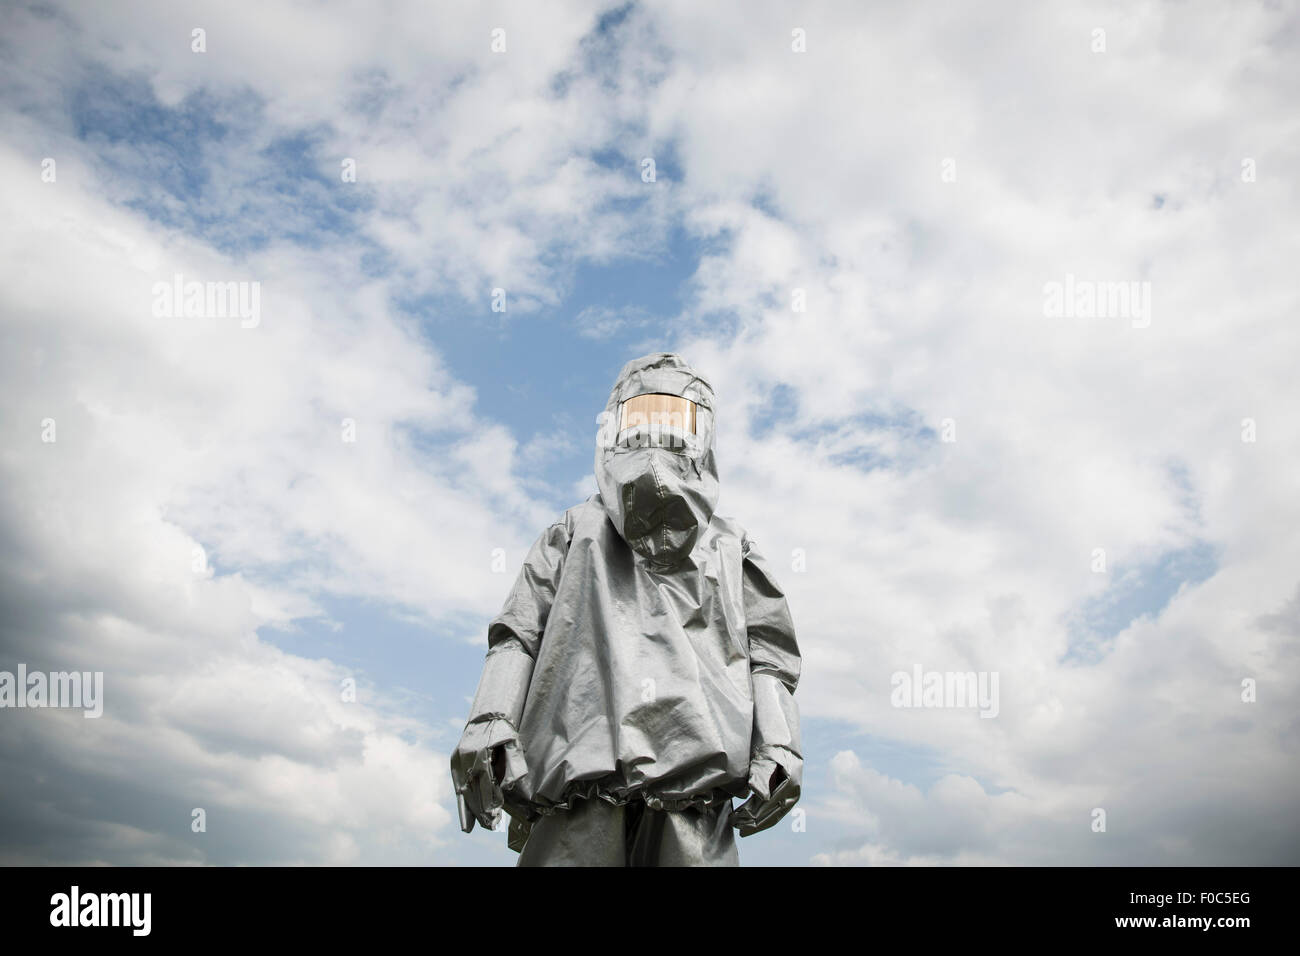 Una persona in una radiazione tuta protettiva in piedi contro un cielo nuvoloso Foto Stock